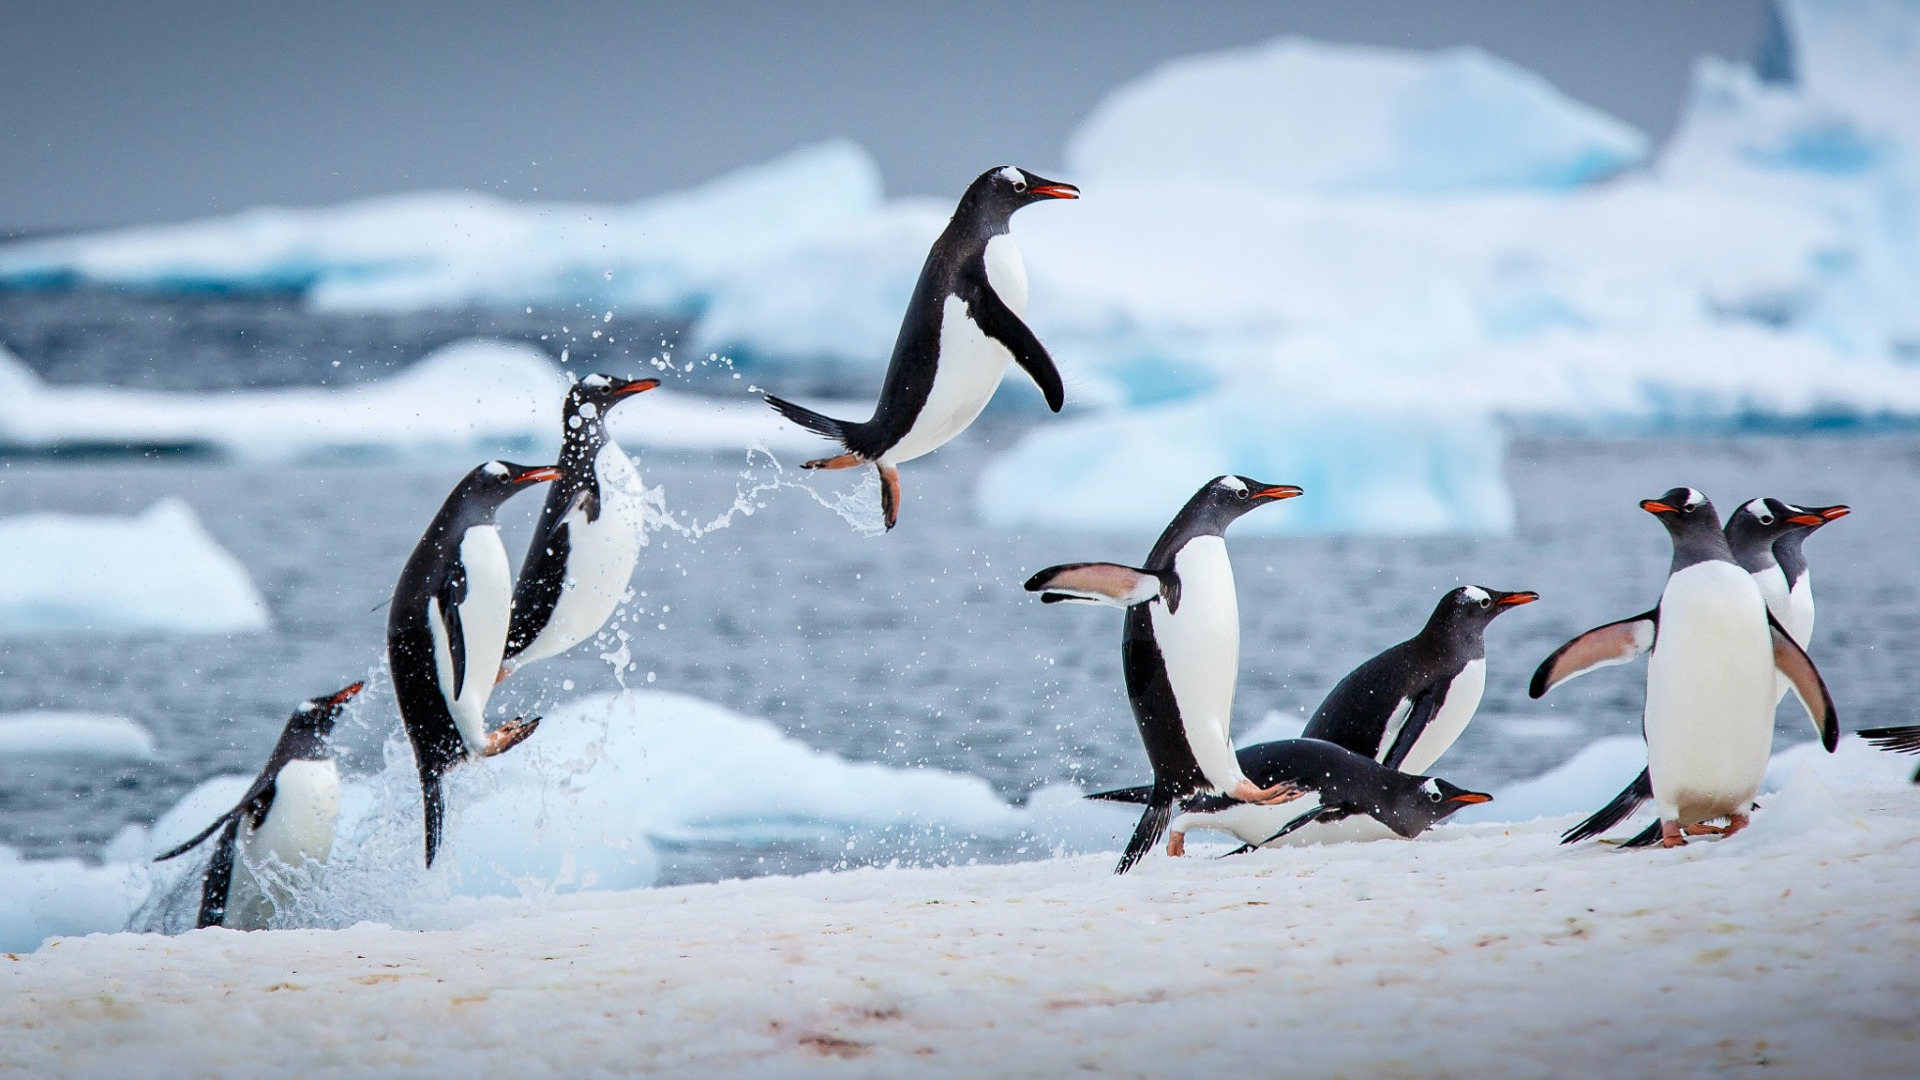 عکس پس زمینه از قطب یخی با پنگوئن های کیوت با کیفیت